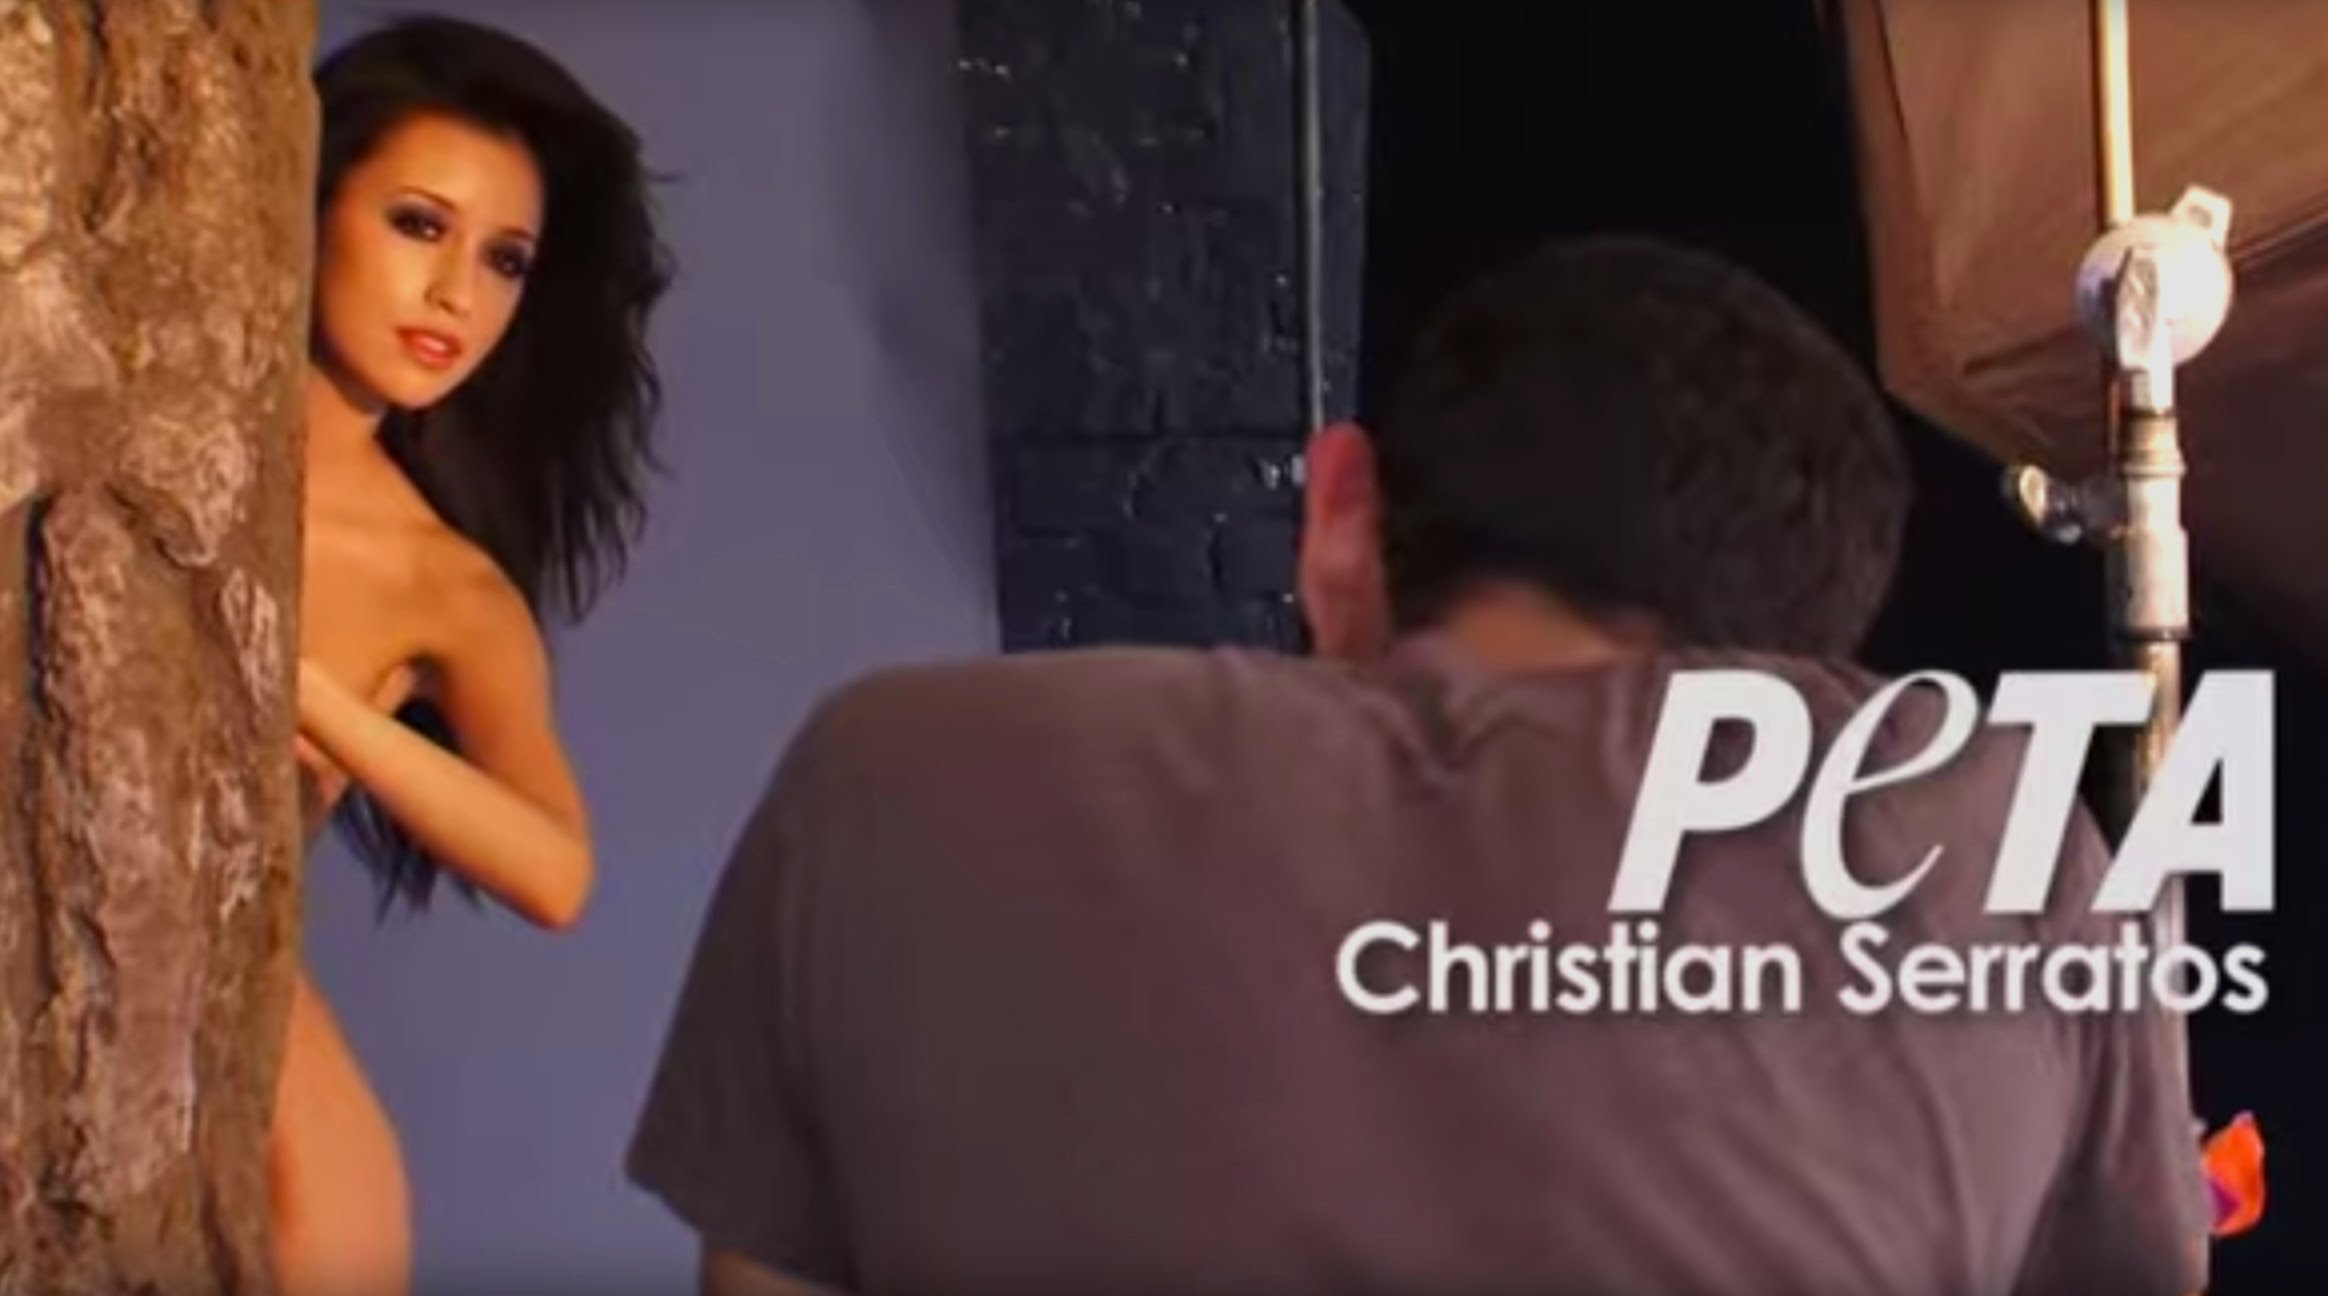 Christian serratos leaked nude